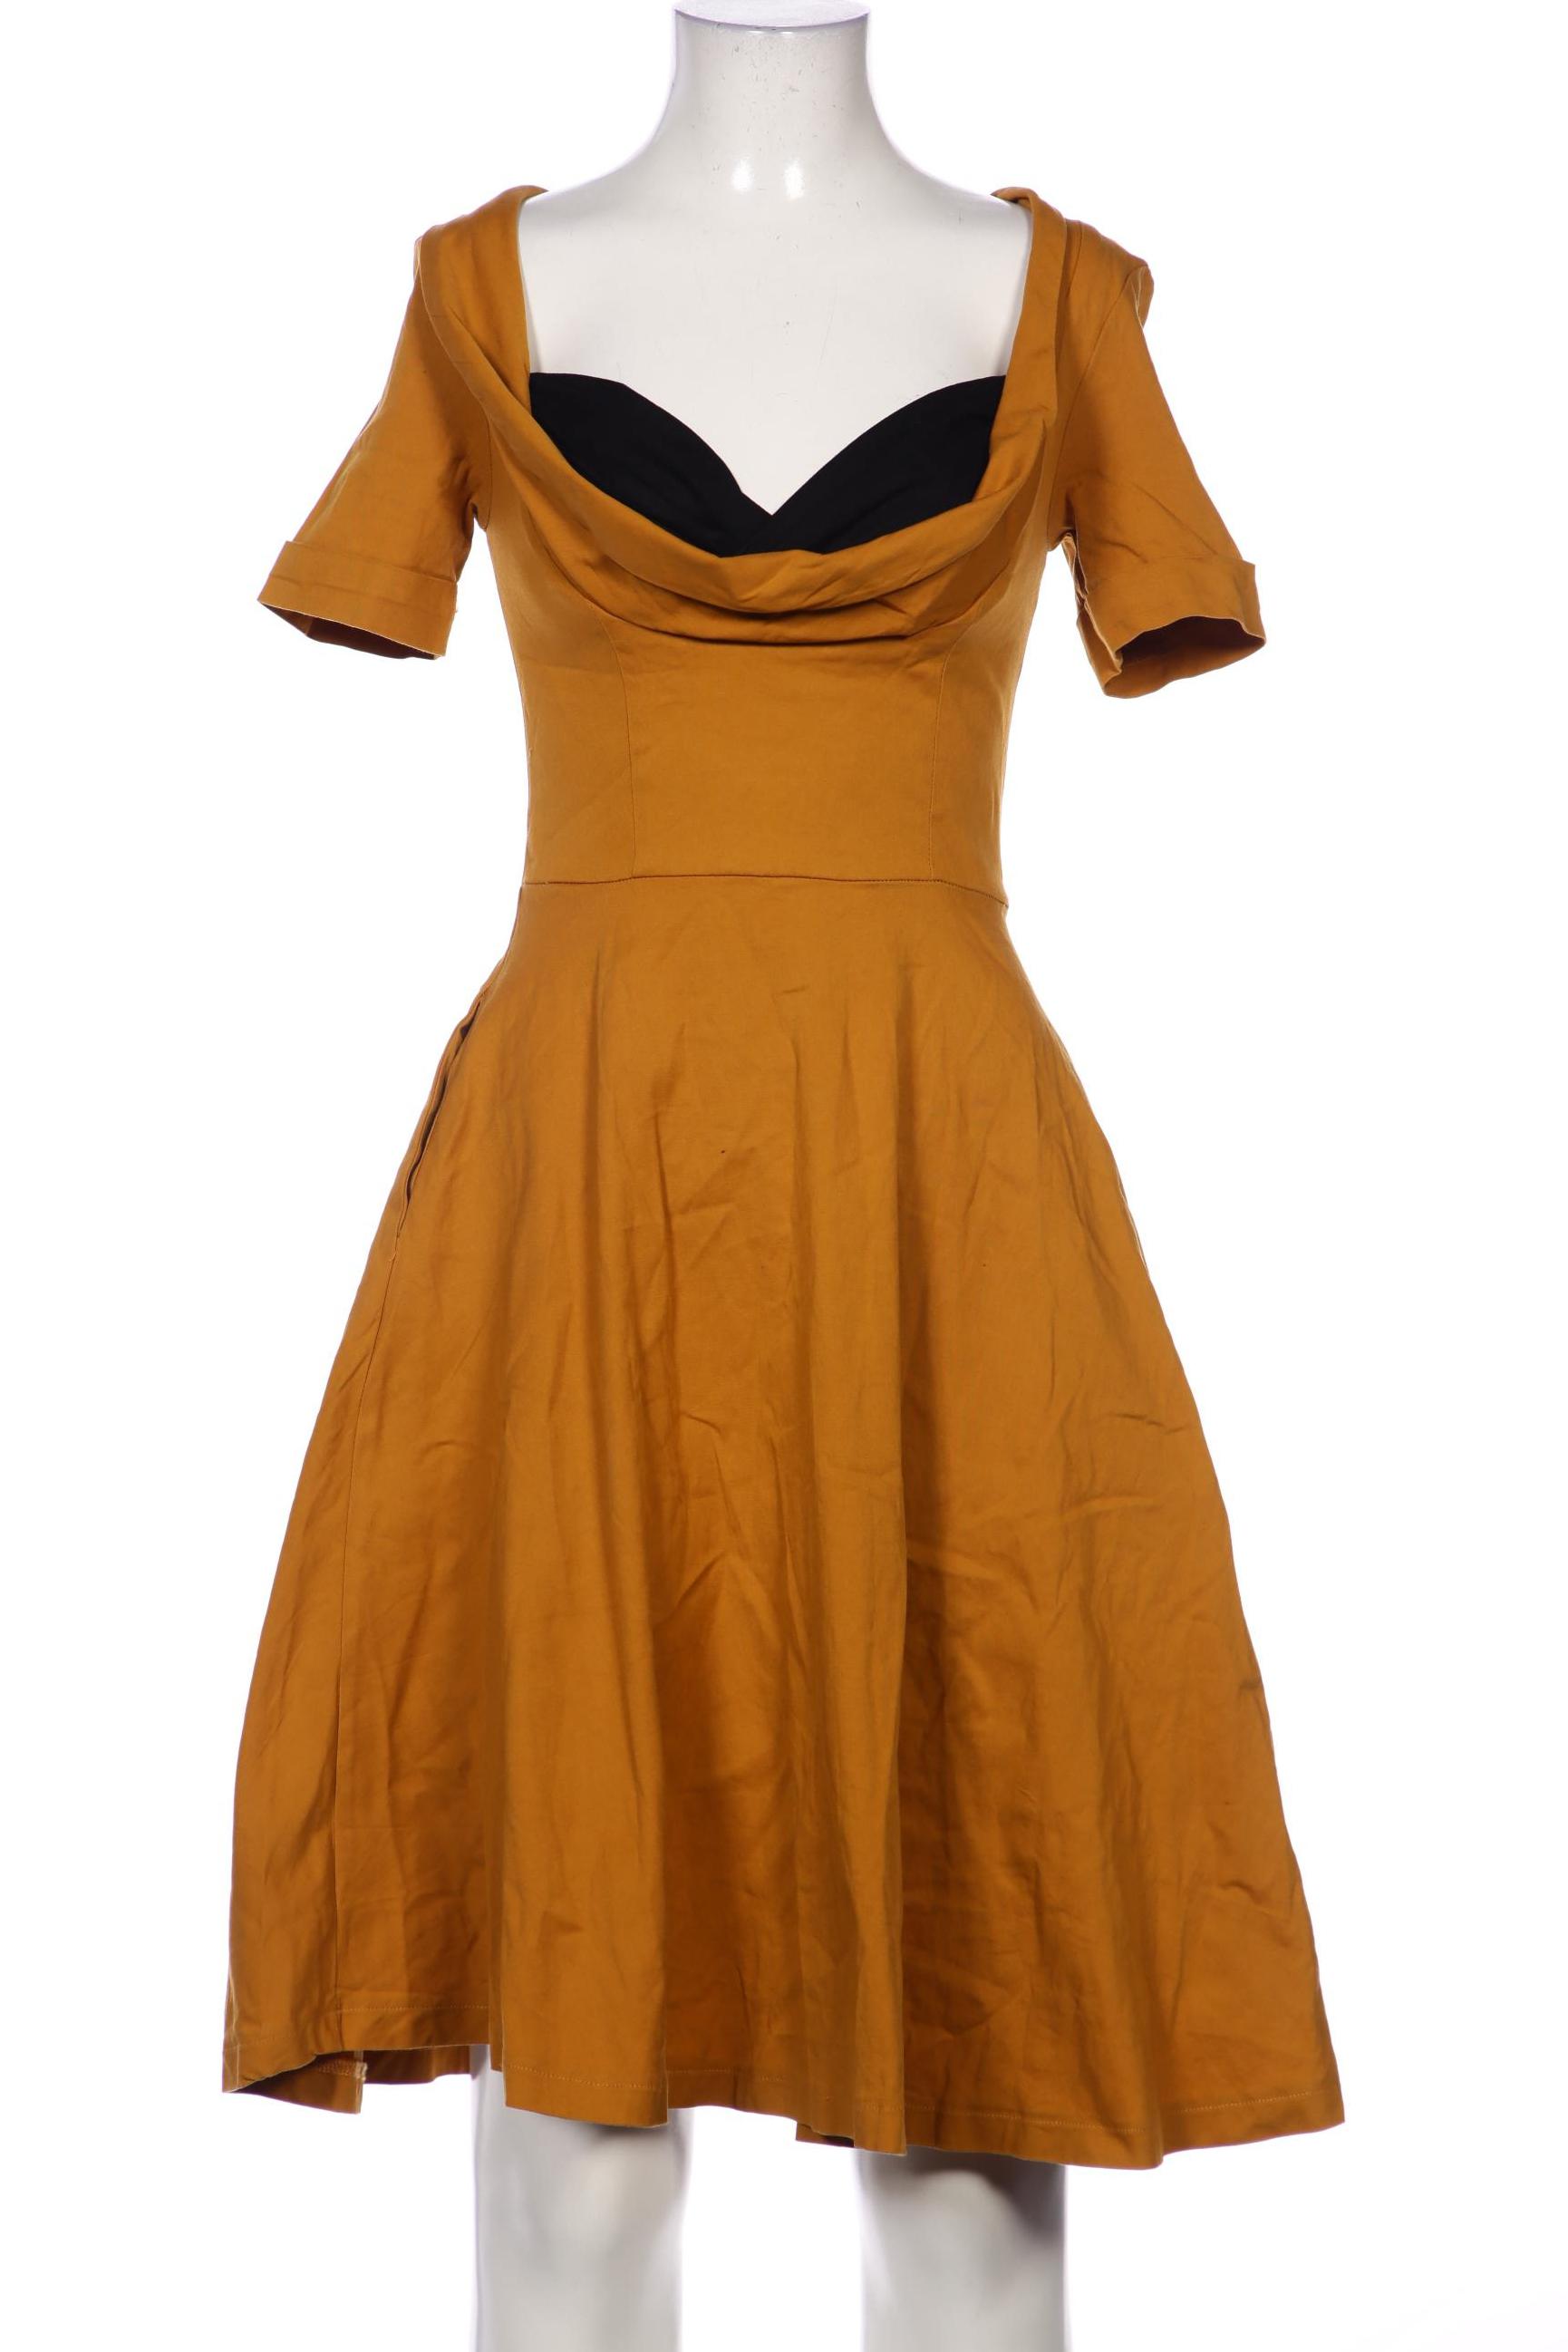 Lindy Bop Damen Kleid, orange, Gr. 34 von lindy bop